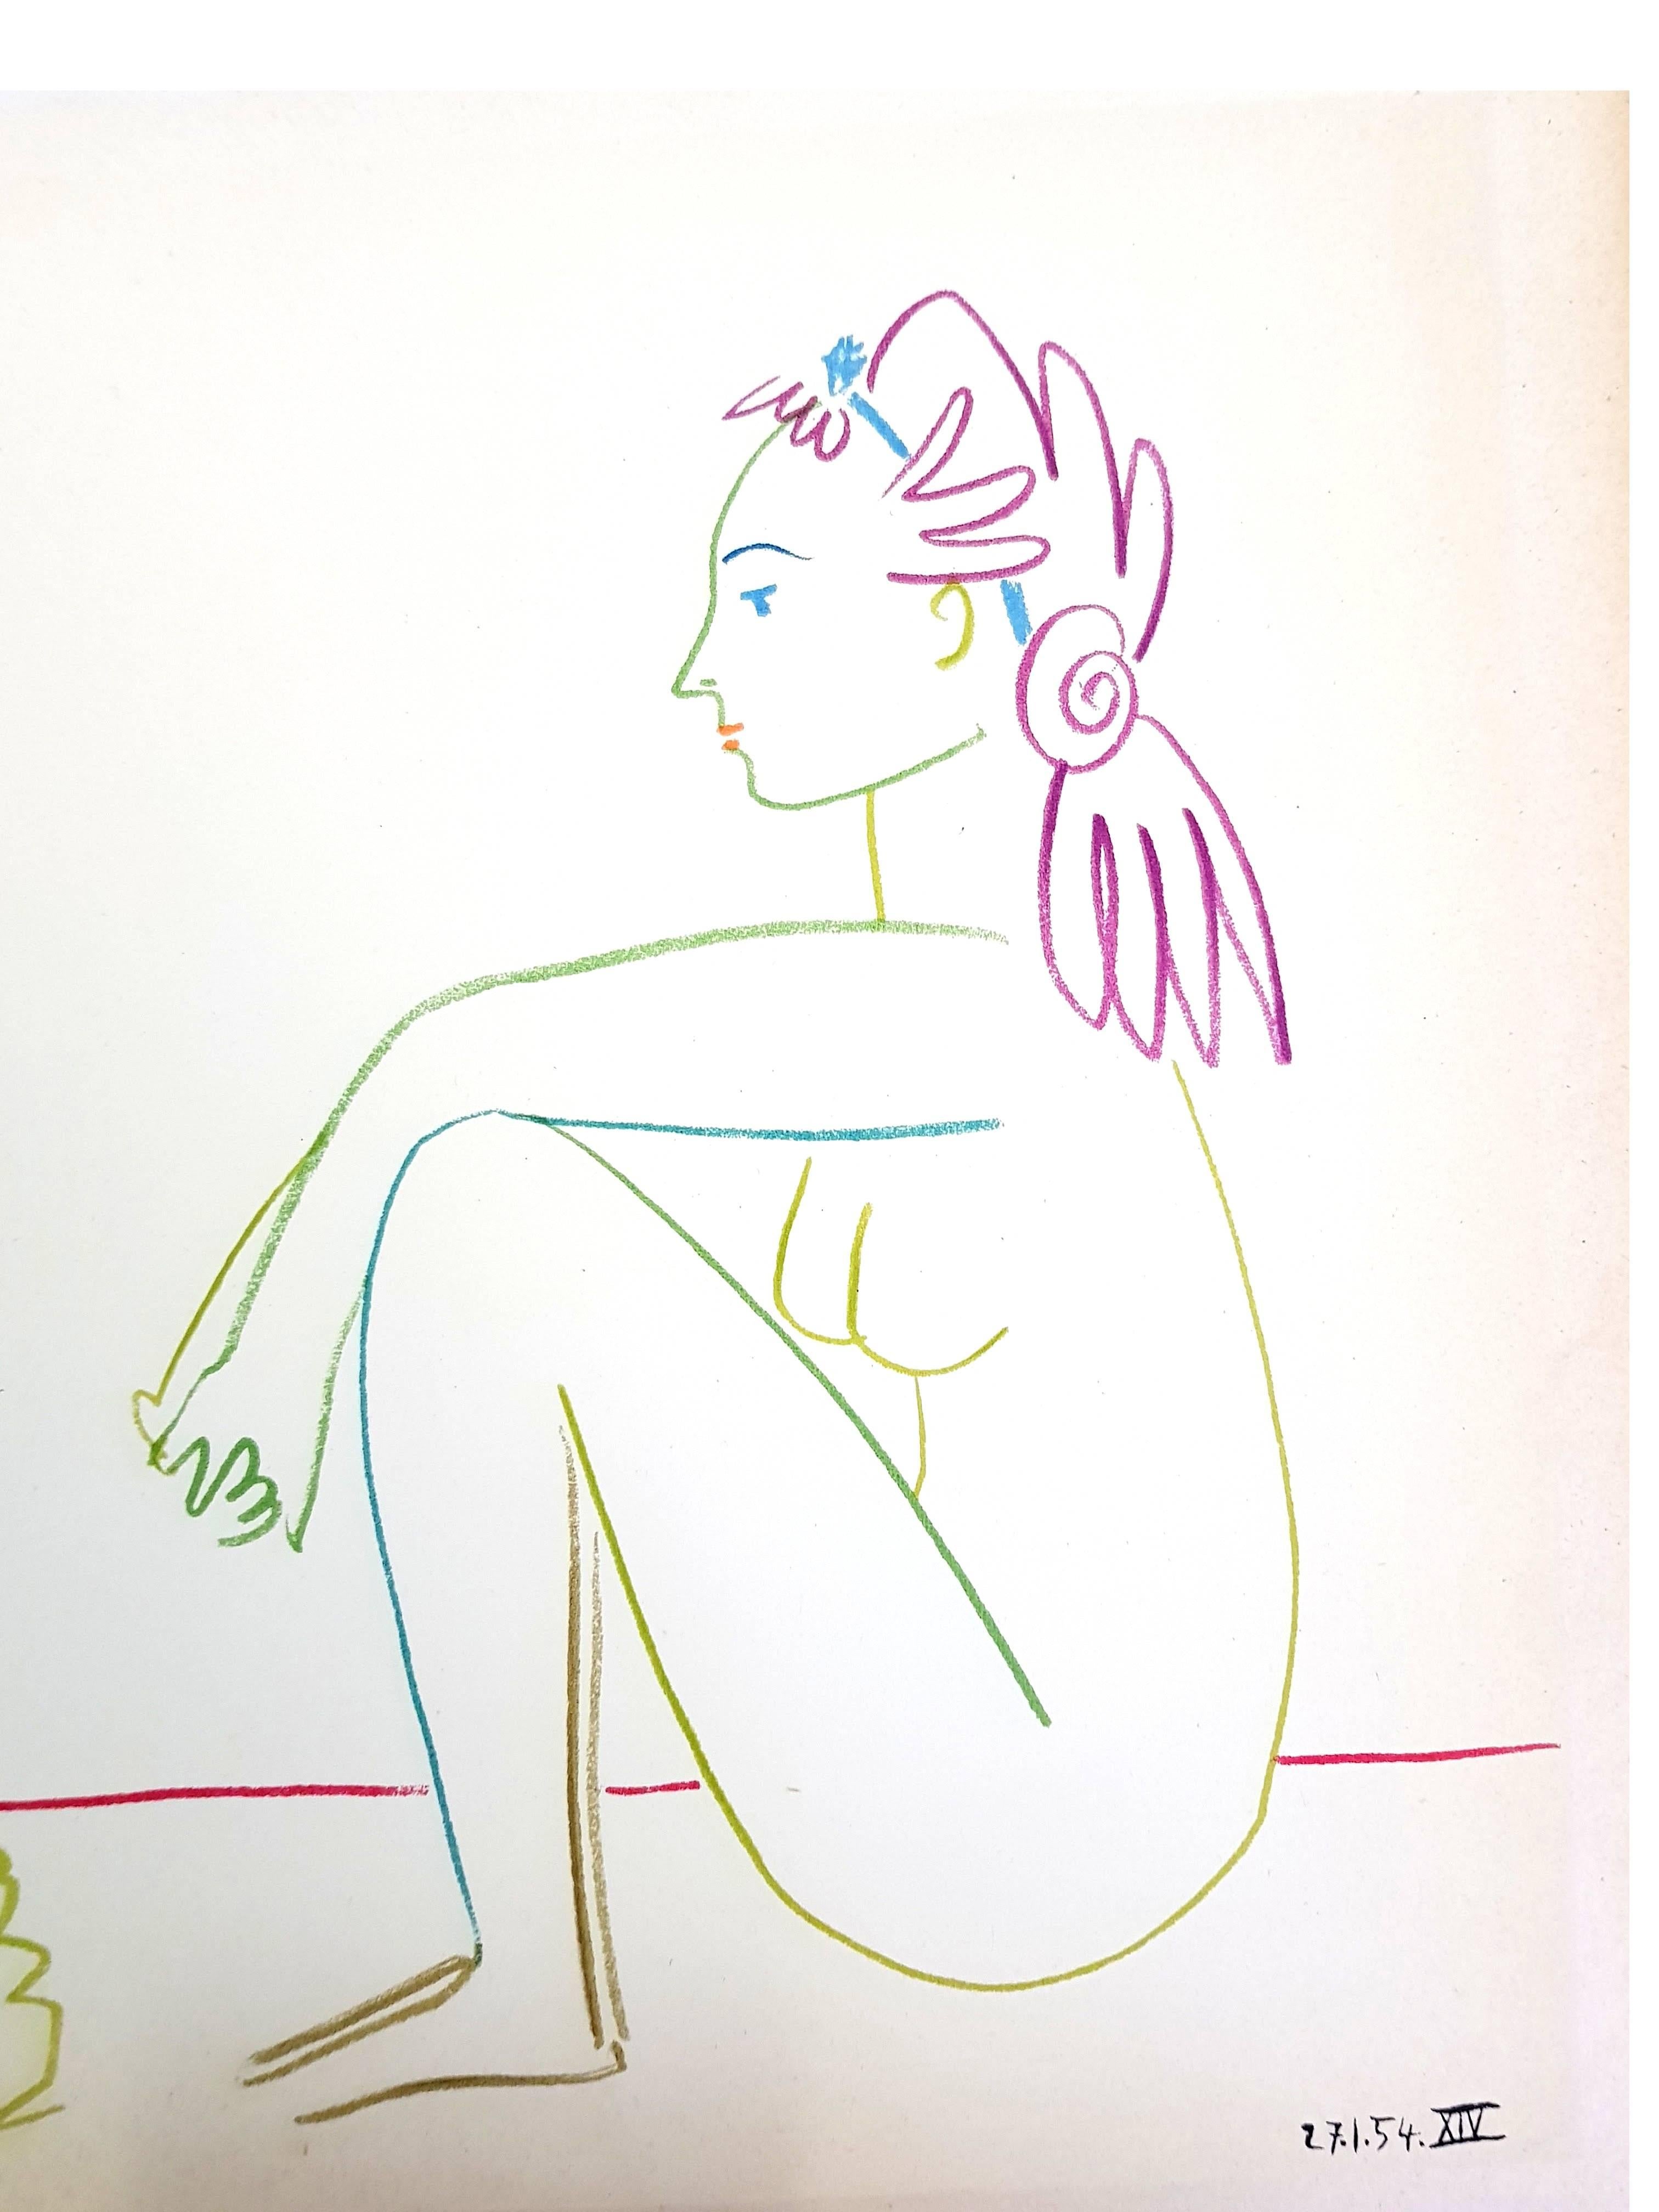 Die menschliche Komödie - Lithographie – Print von (after) Pablo Picasso